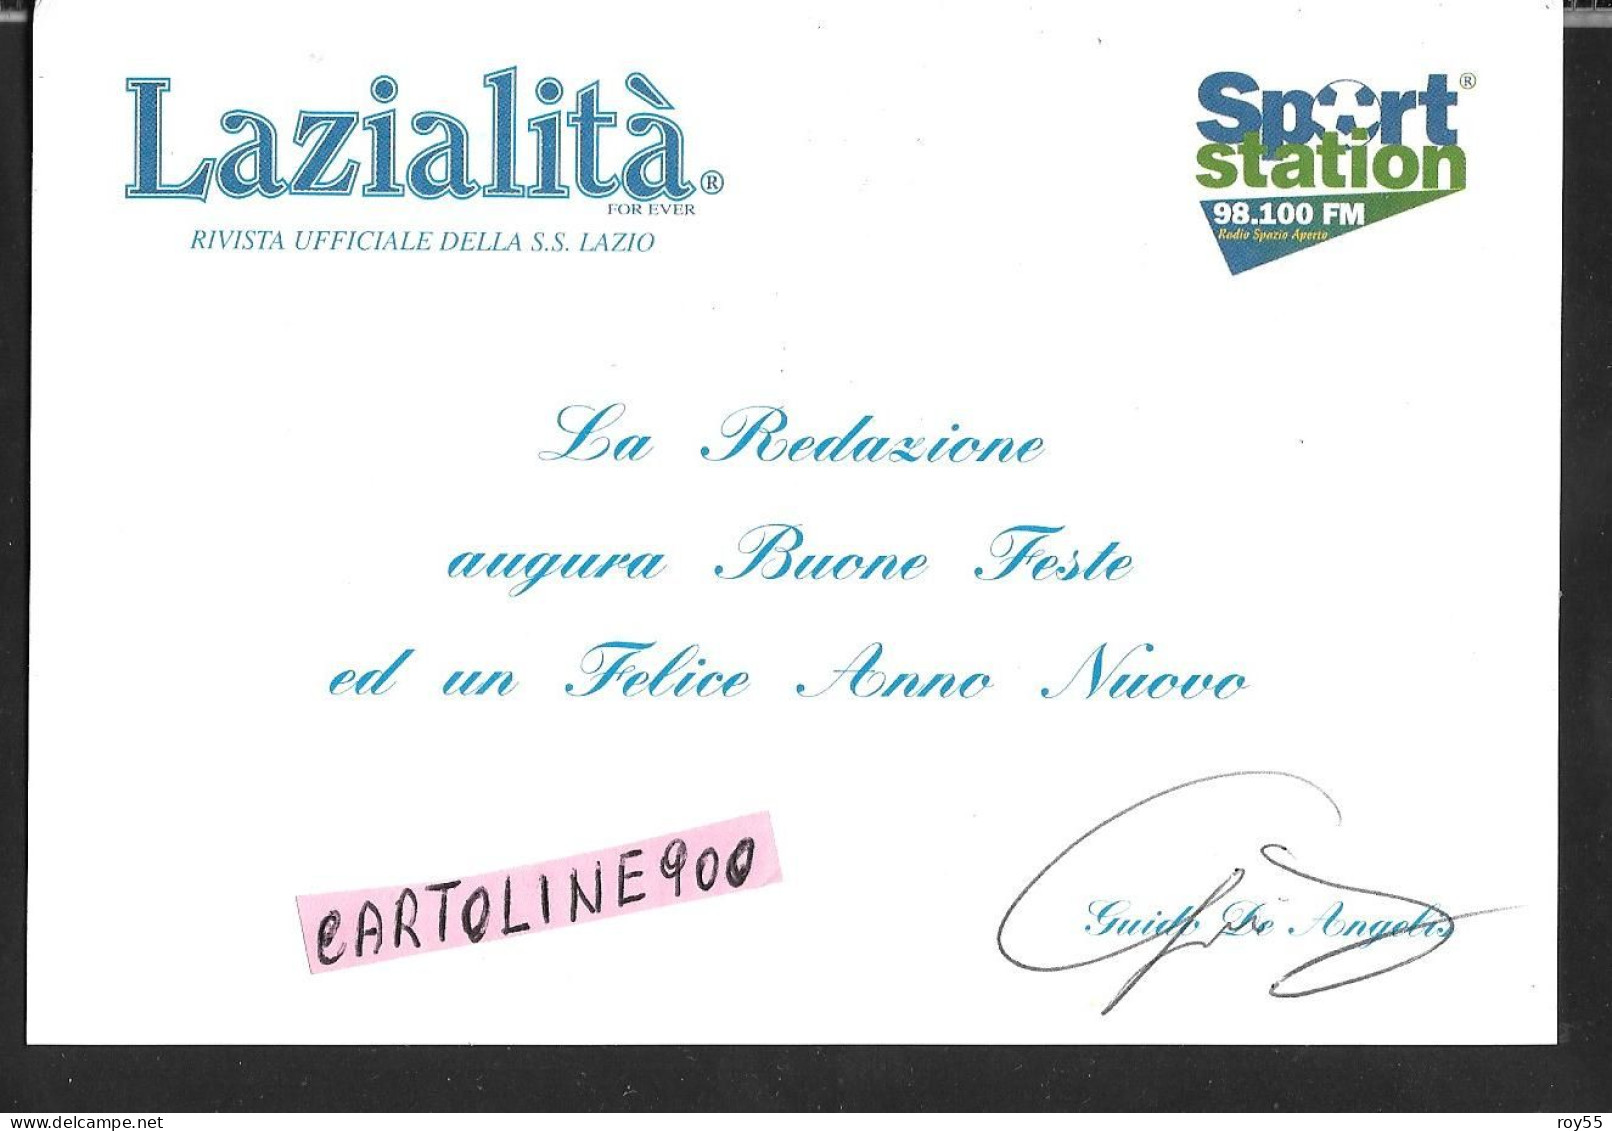 Sport Calcio Lazialita For Ever Rivista Ufficiale Ss Lazio Calcio 1900 Sport Station 98.100 Fm Di Guido De Angelis - Football